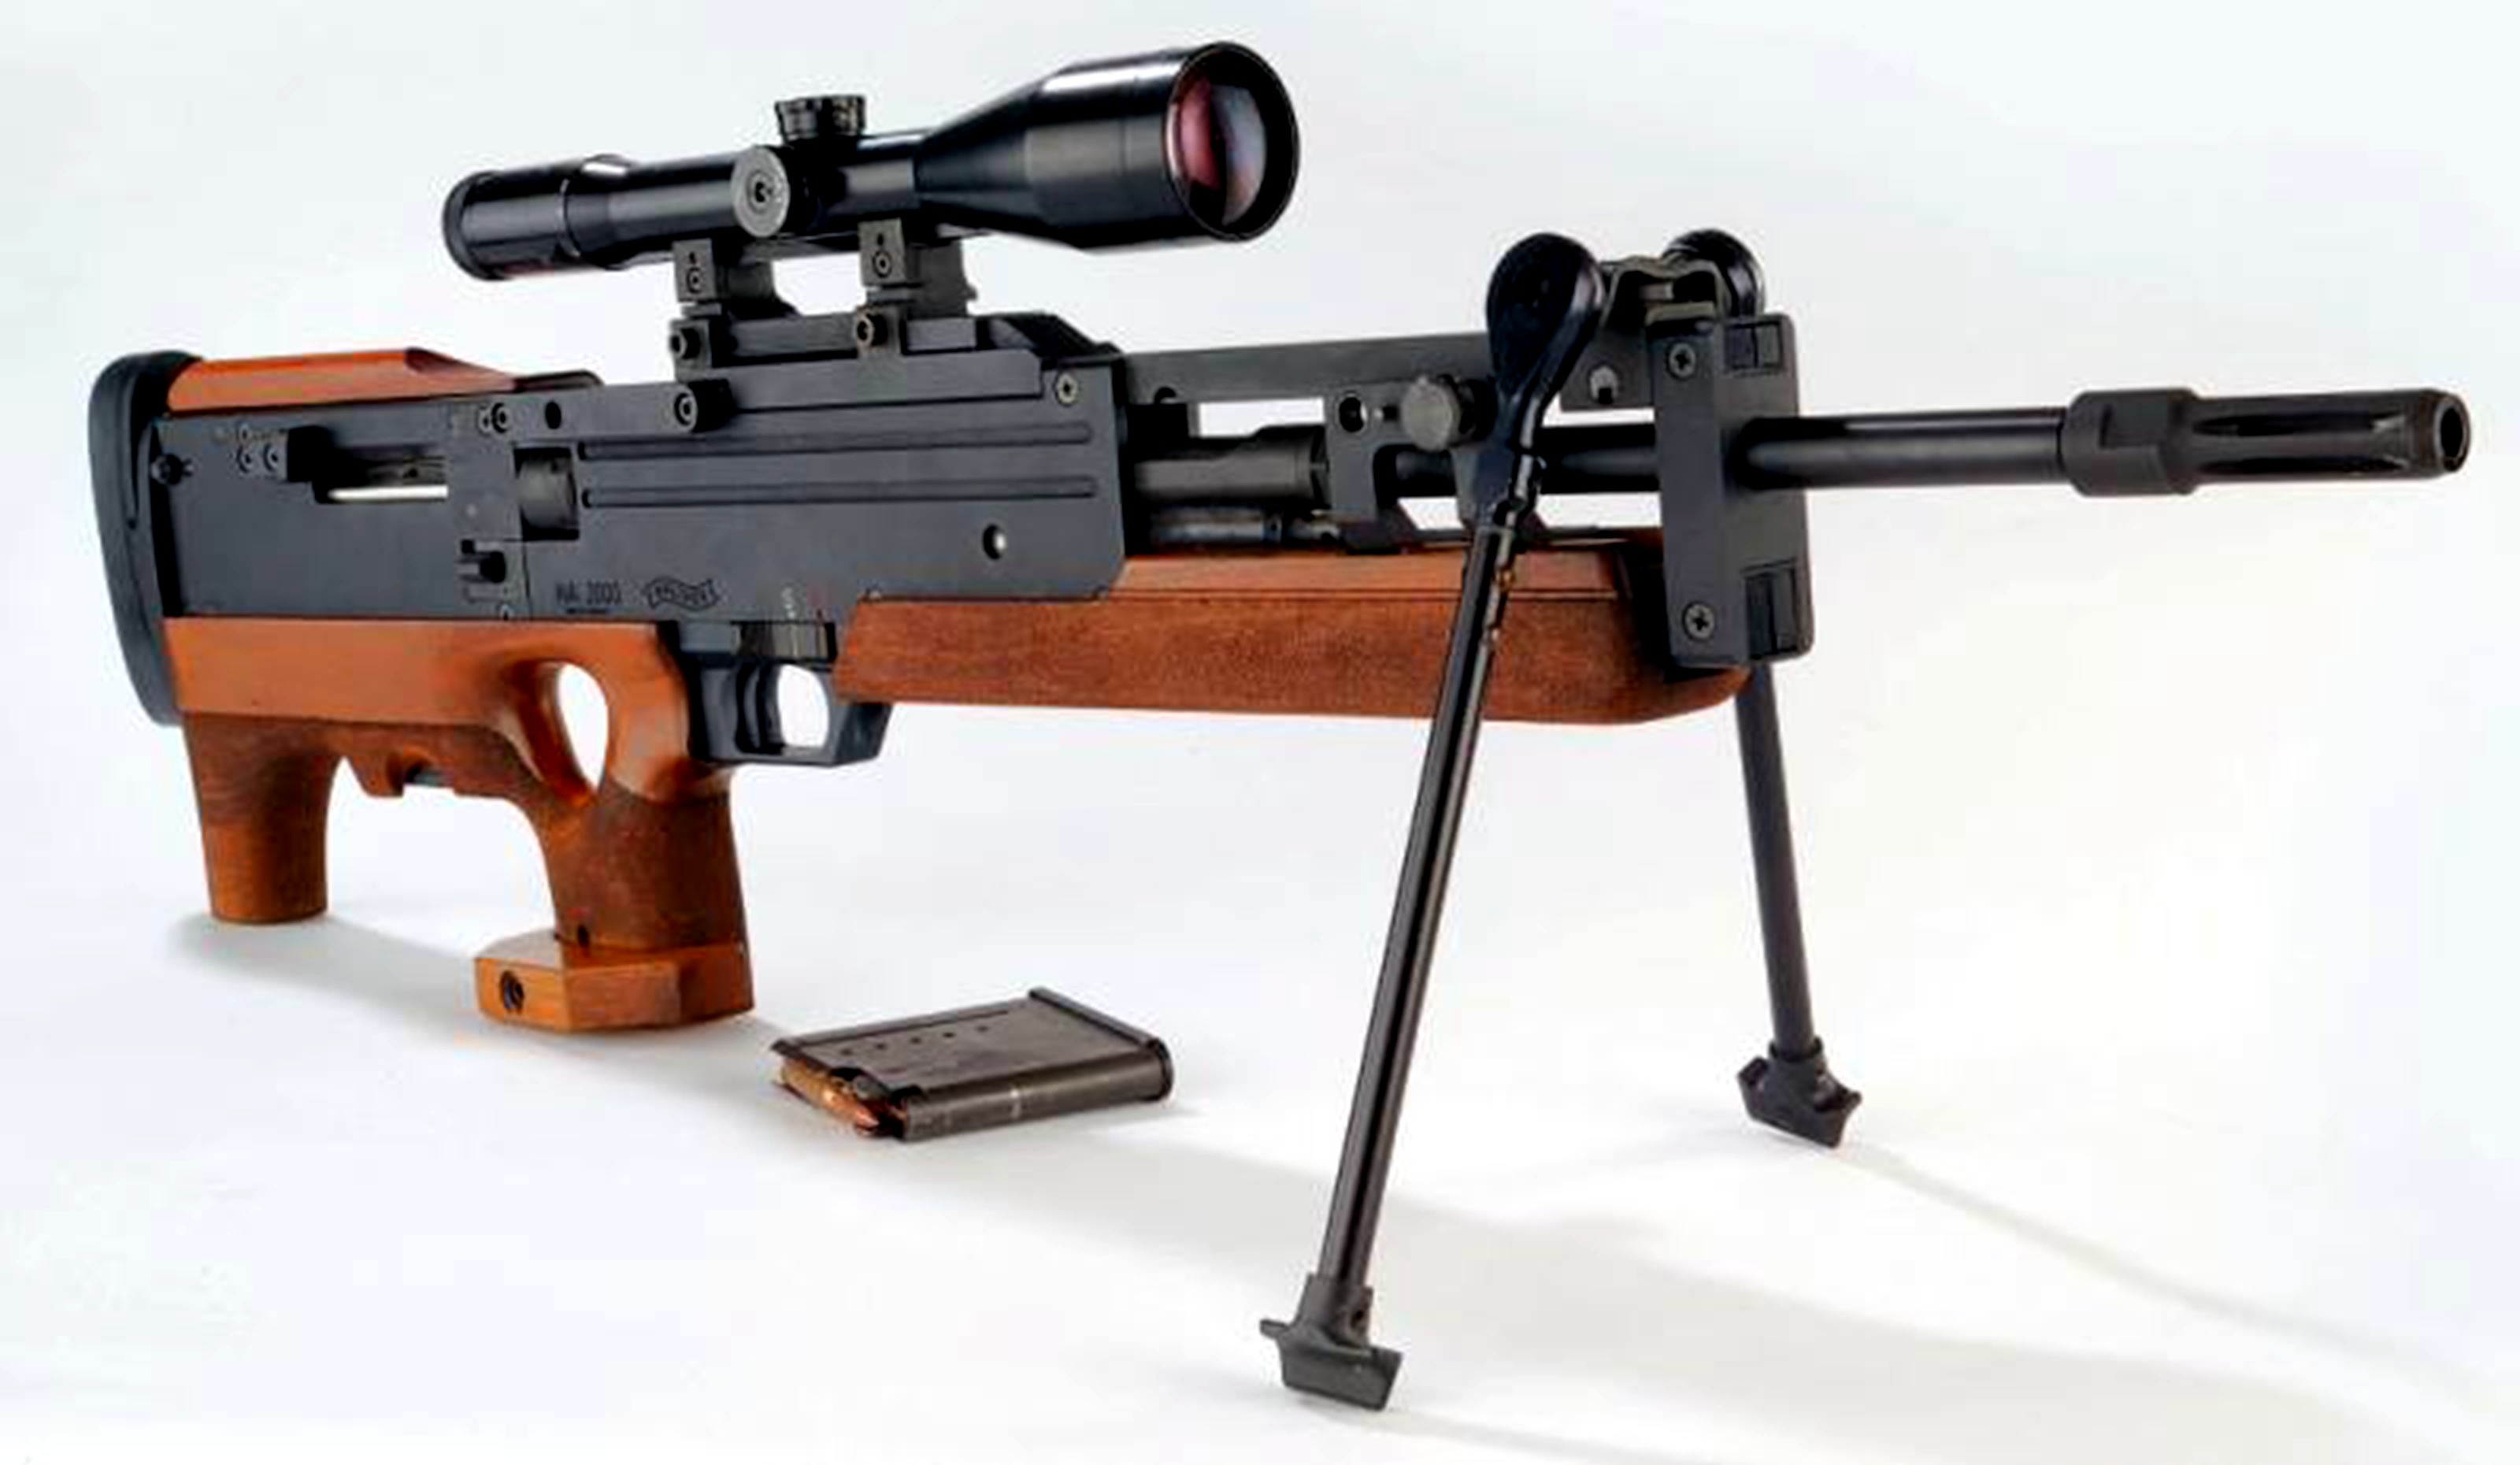 1/11瓦尔特wa2000:瓦尔特wa2000狙击步枪是由卡尔·瓦尔特公司在1970